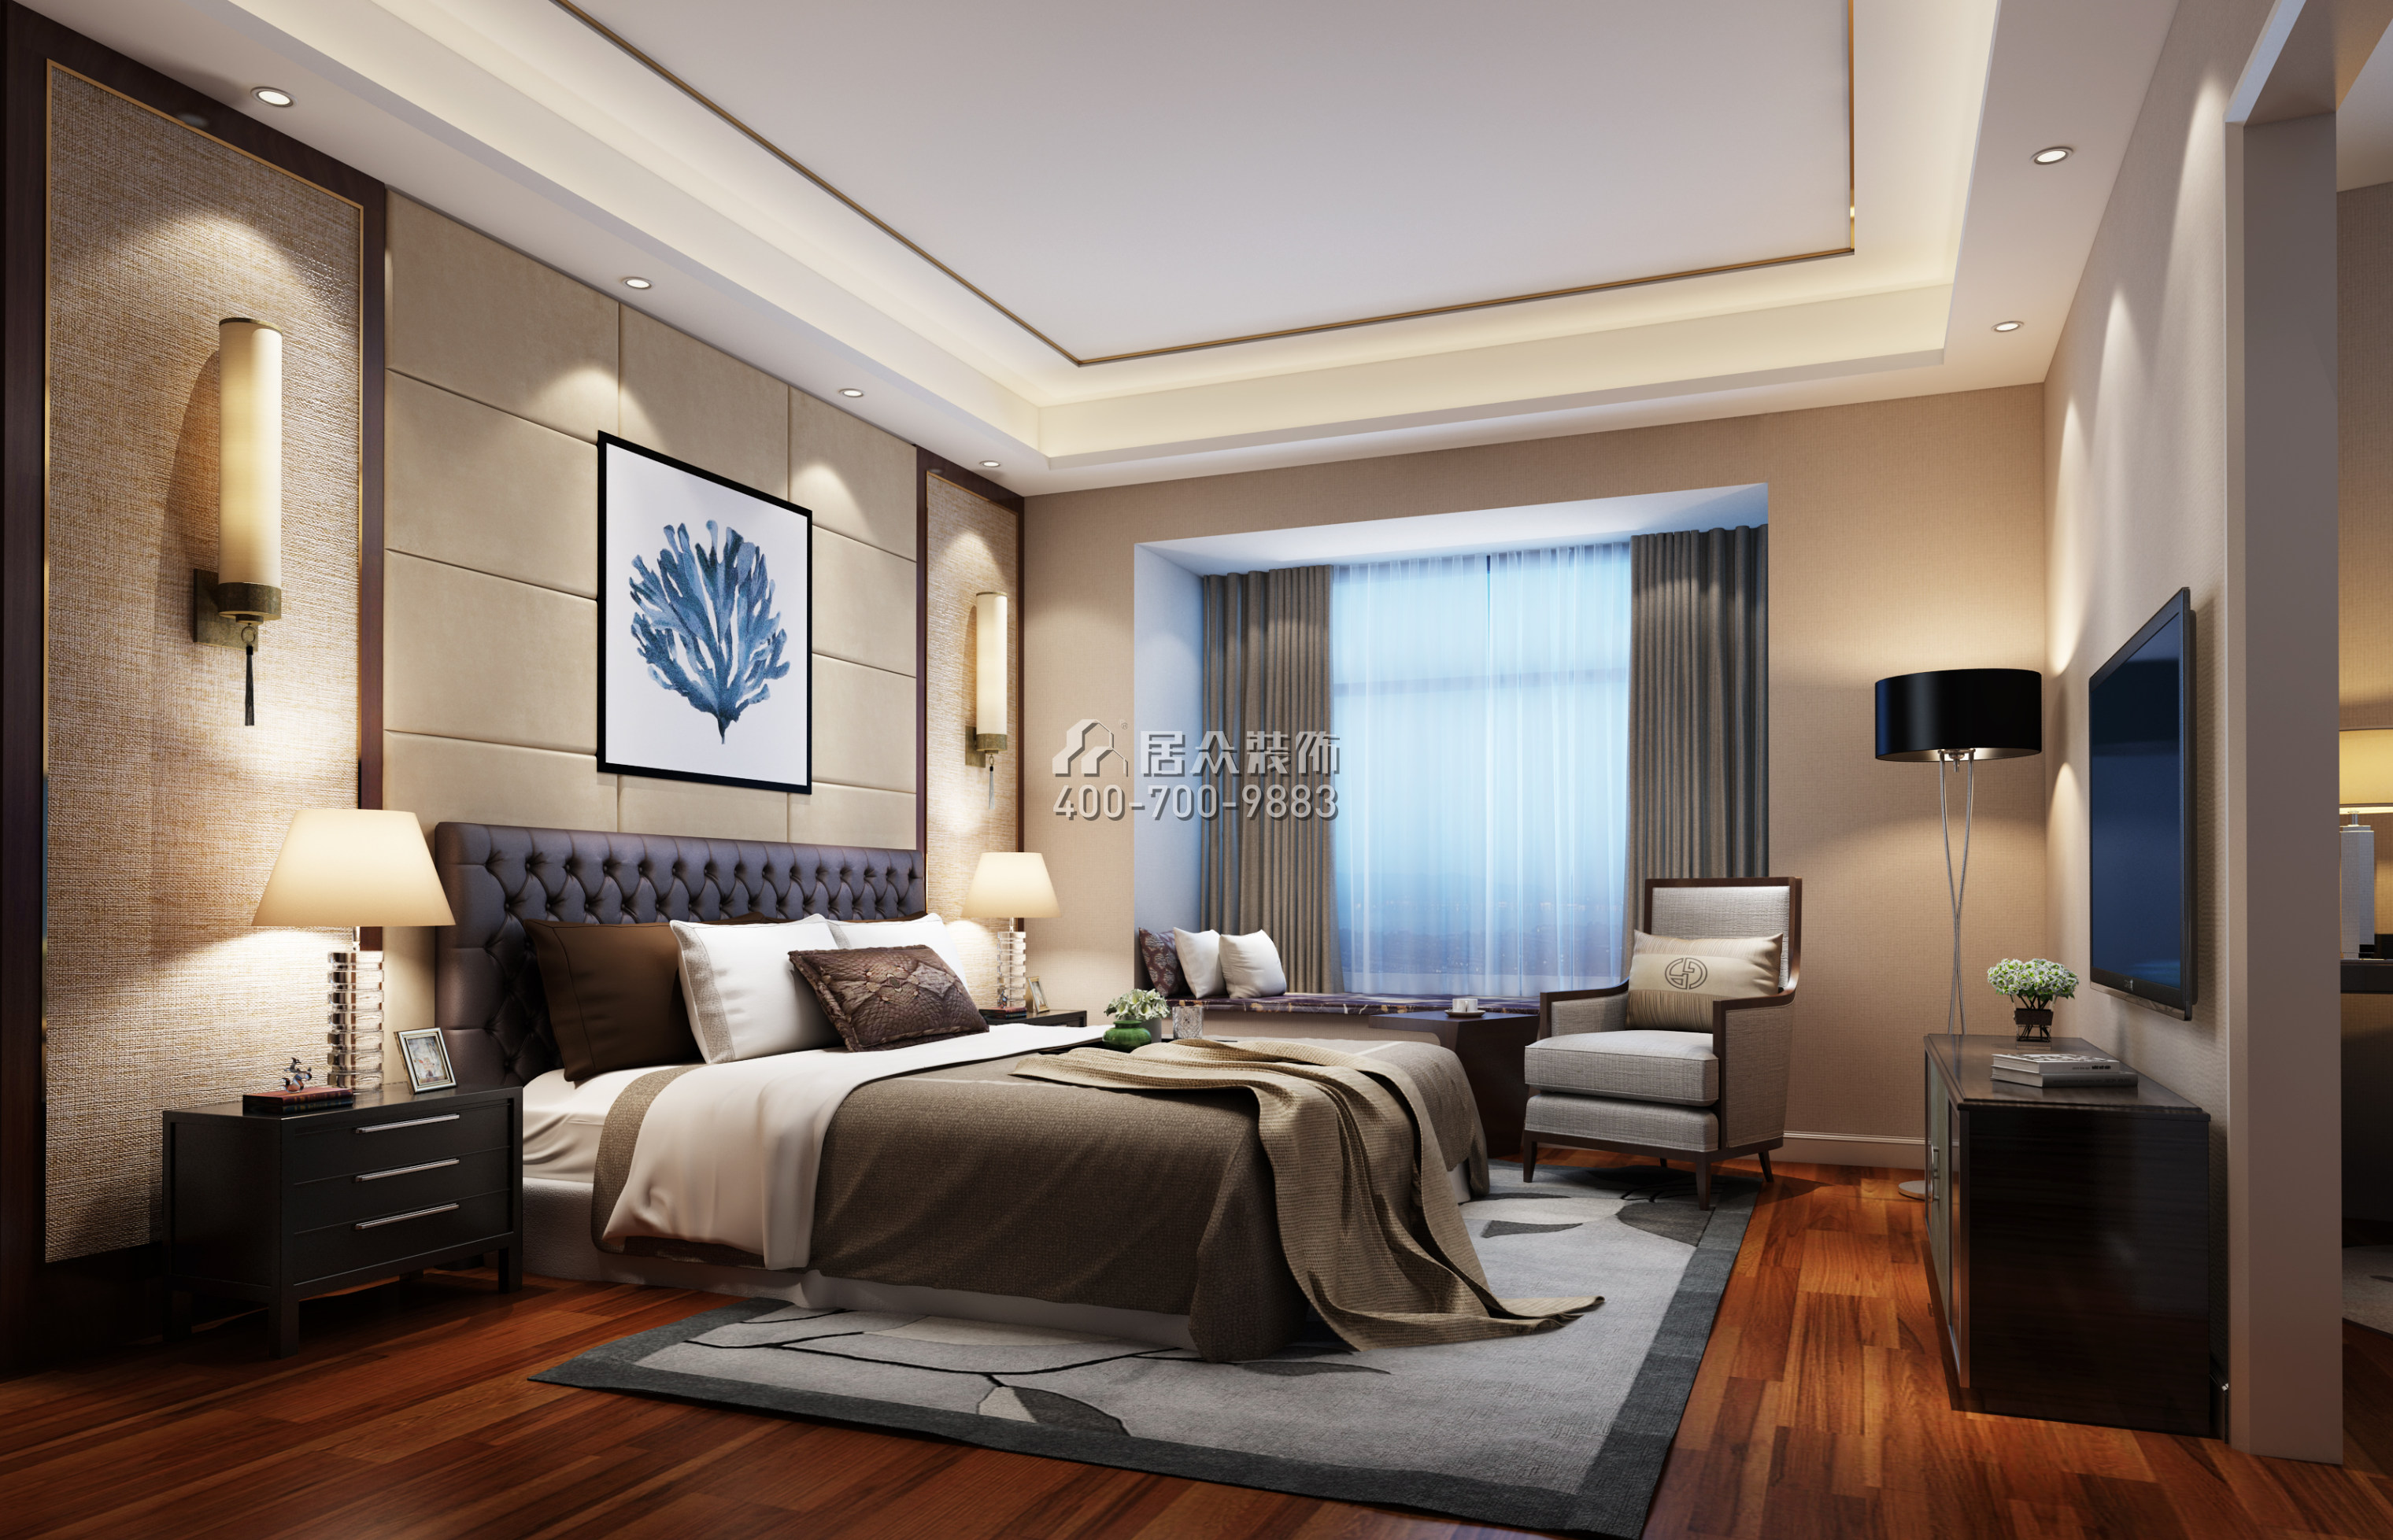 蔚藍海岸三期120平方米中式風格平層戶型臥室裝修效果圖